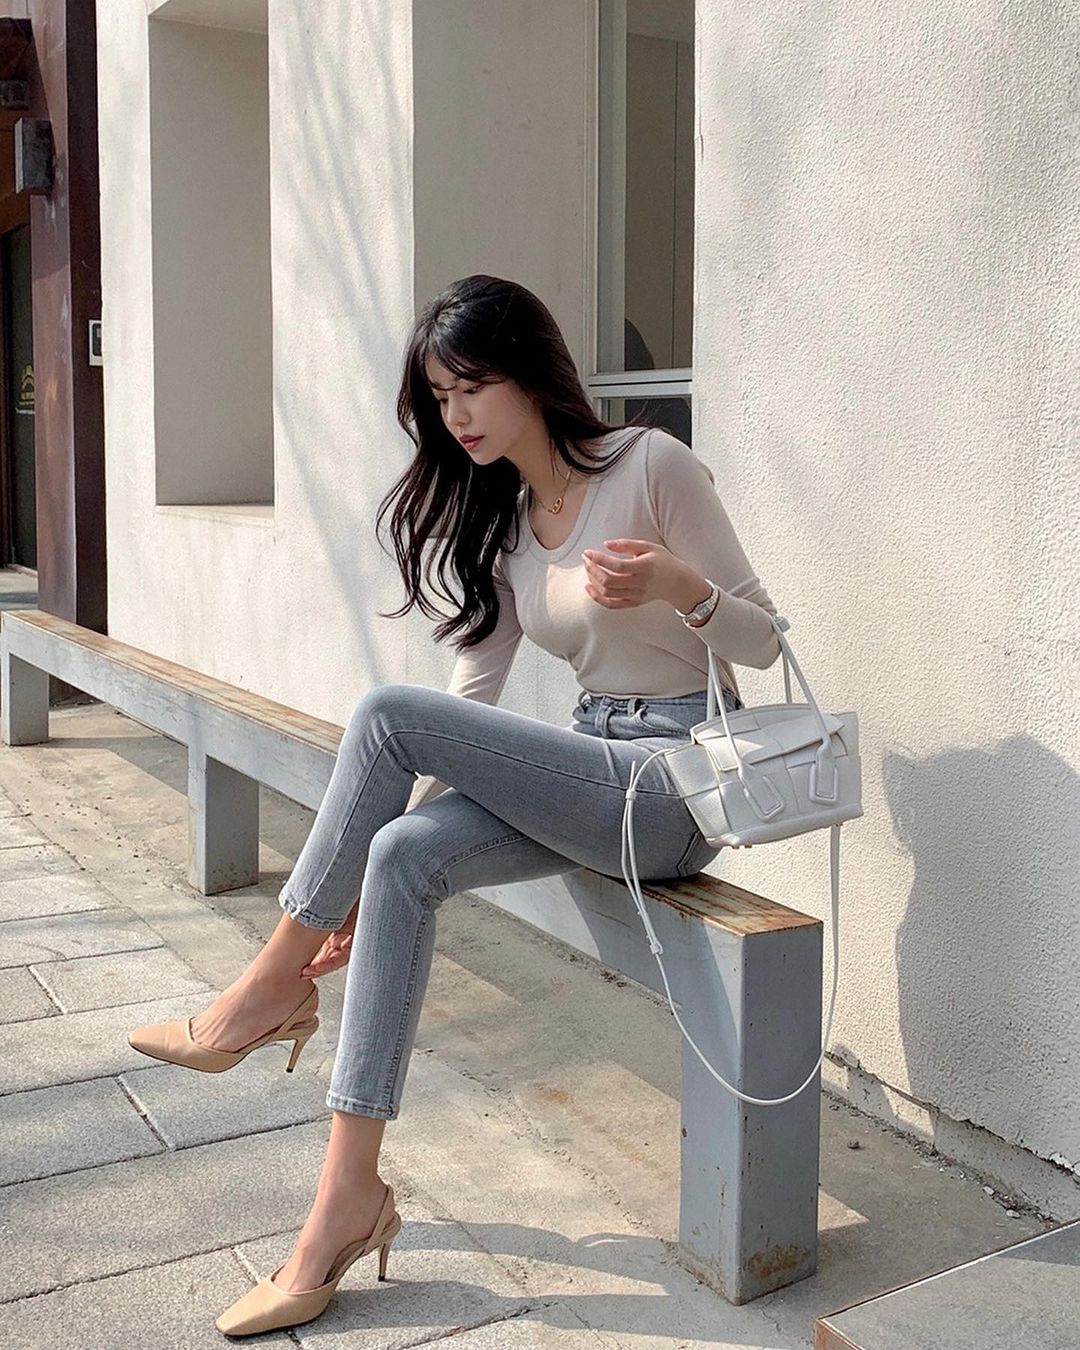 Học nàng blogger Hàn cách diện jeans “đỉnh của chóp”: Vừa hack dáng vừa thanh lịch để đến sở làm - Ảnh 2